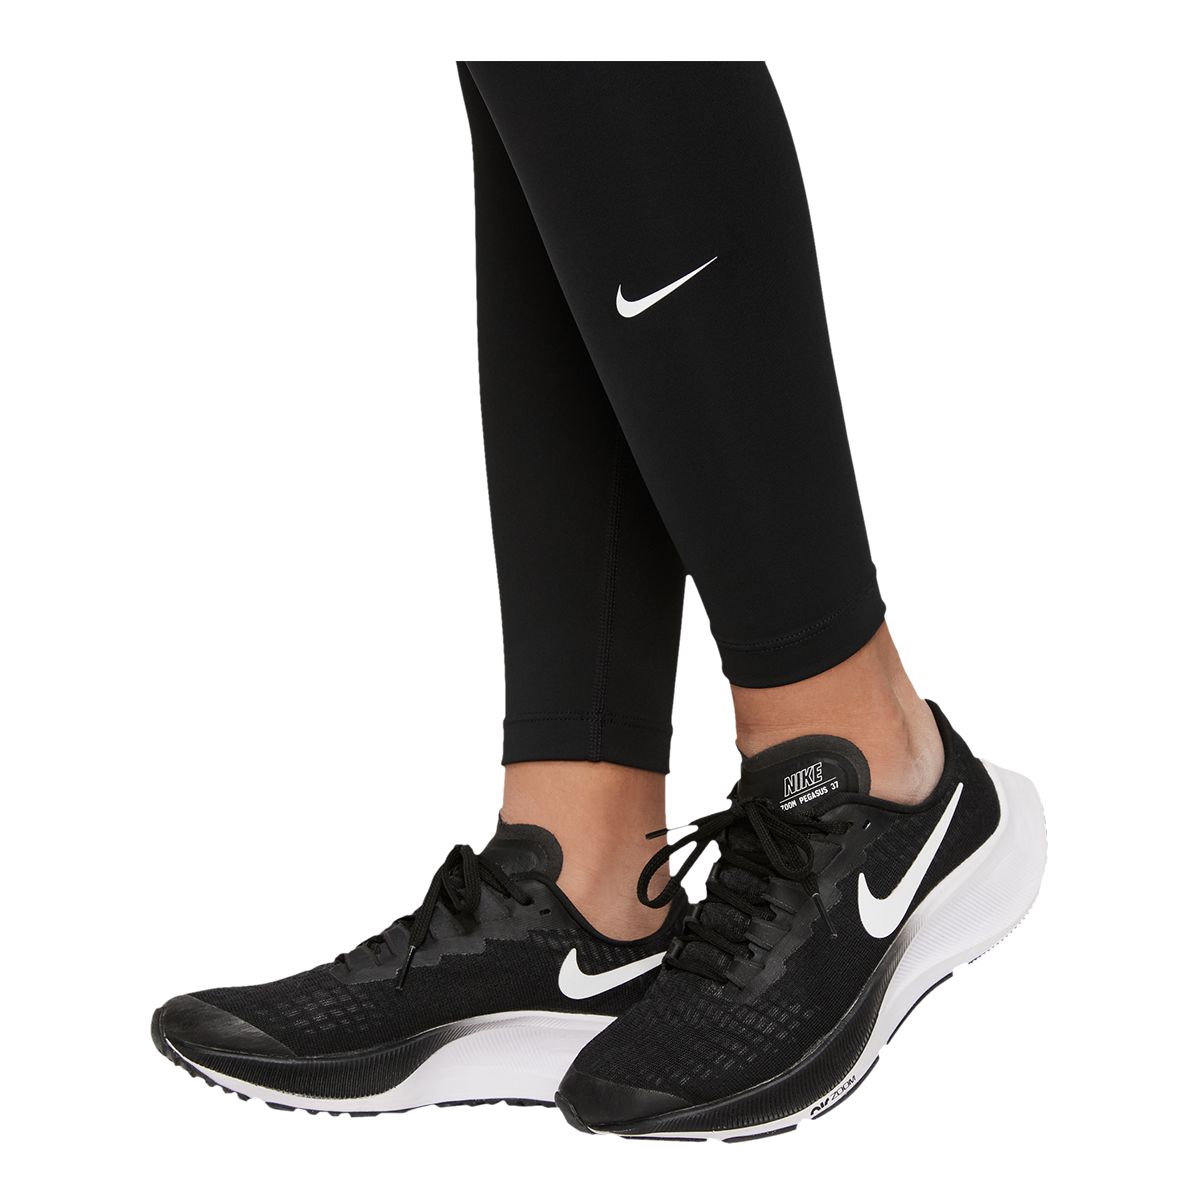 Nike Dri-FIT One Tight Girls